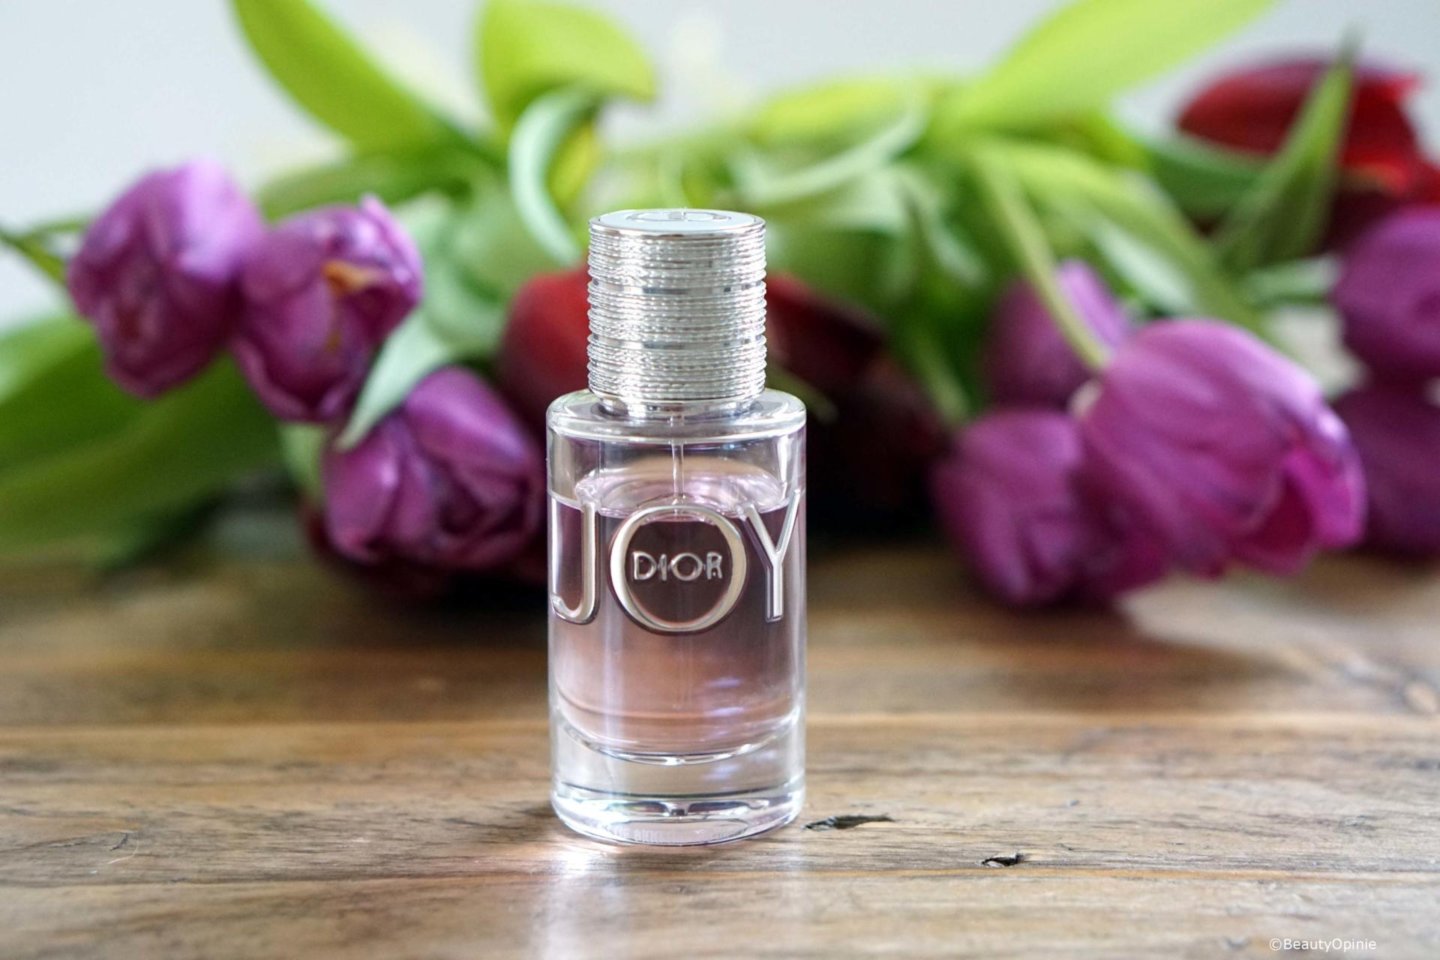 nieuwe geur Joy by Dior